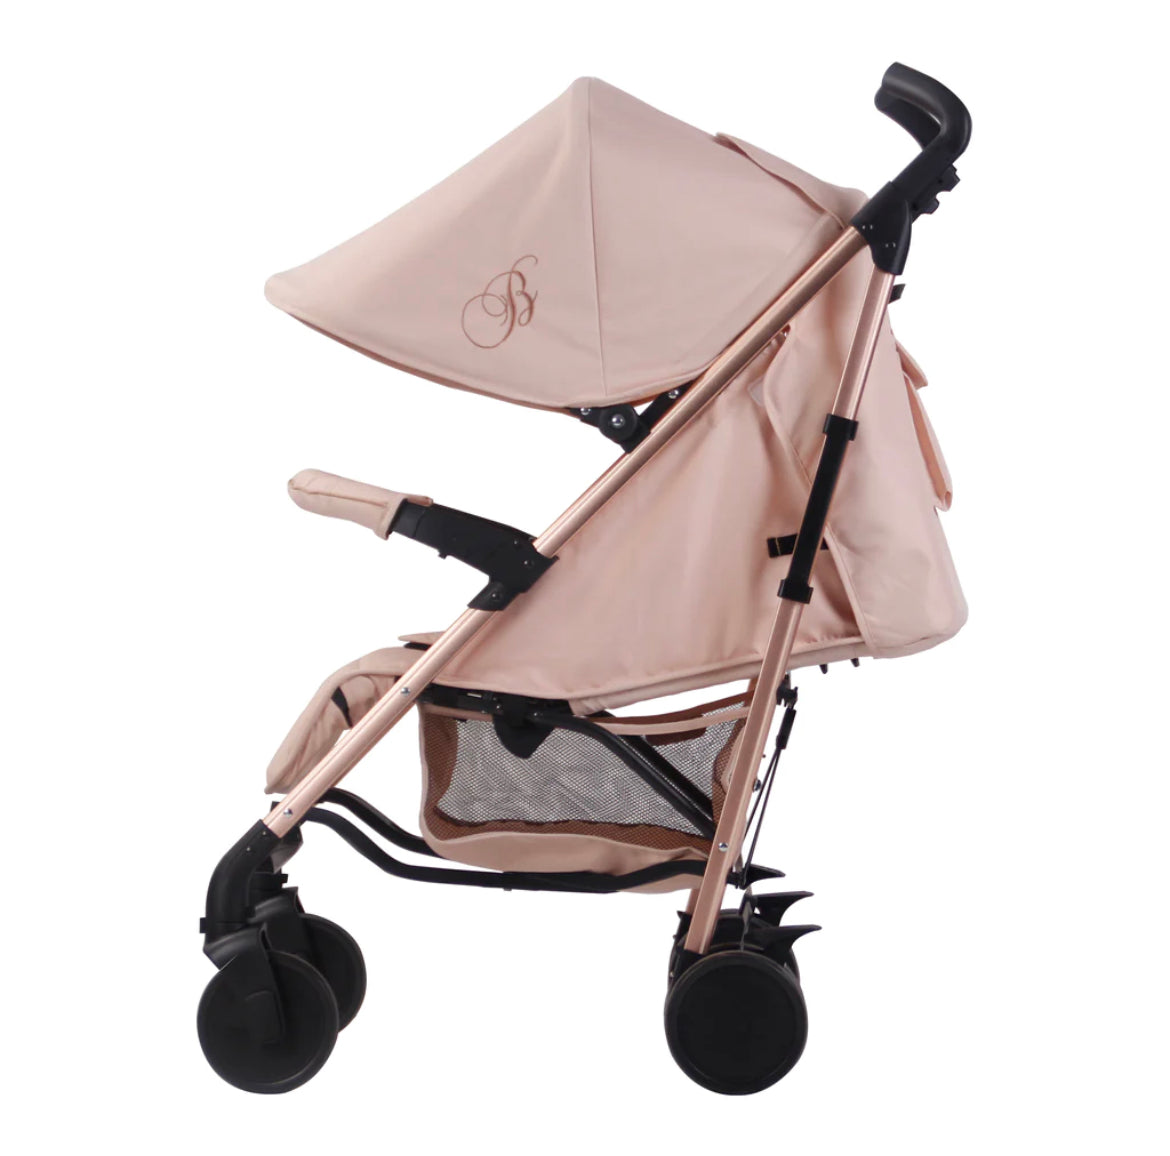 MB51 Billie Faiers Blush Pink Lightweight Stroller